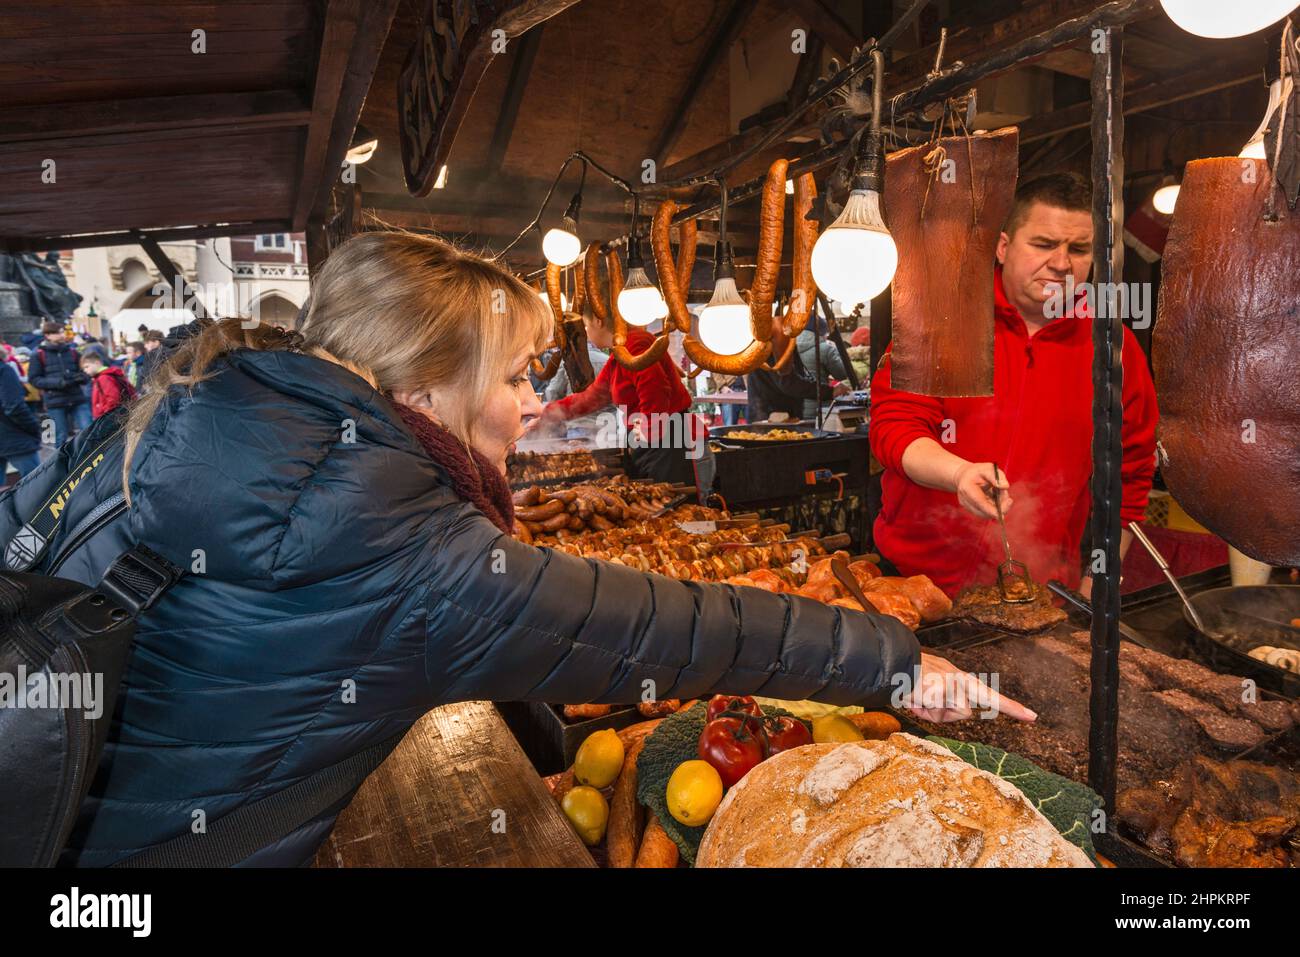 Stand de comida en el mercado de Navidad, Plaza del Mercado, Kraków, Polonia Foto de stock